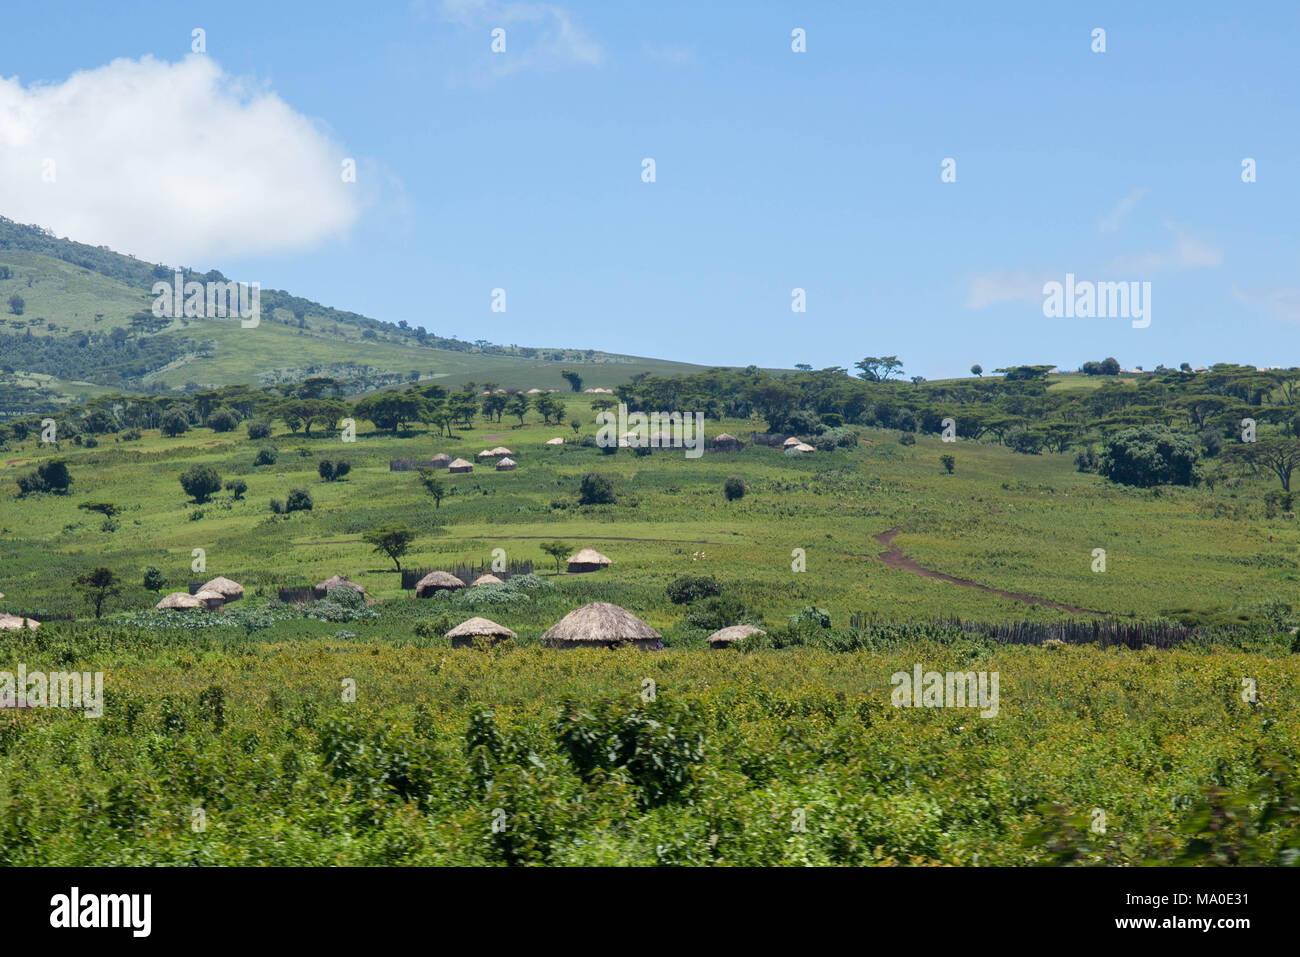 Africa villaggio rurale nel verde della regione montagnosa Foto Stock